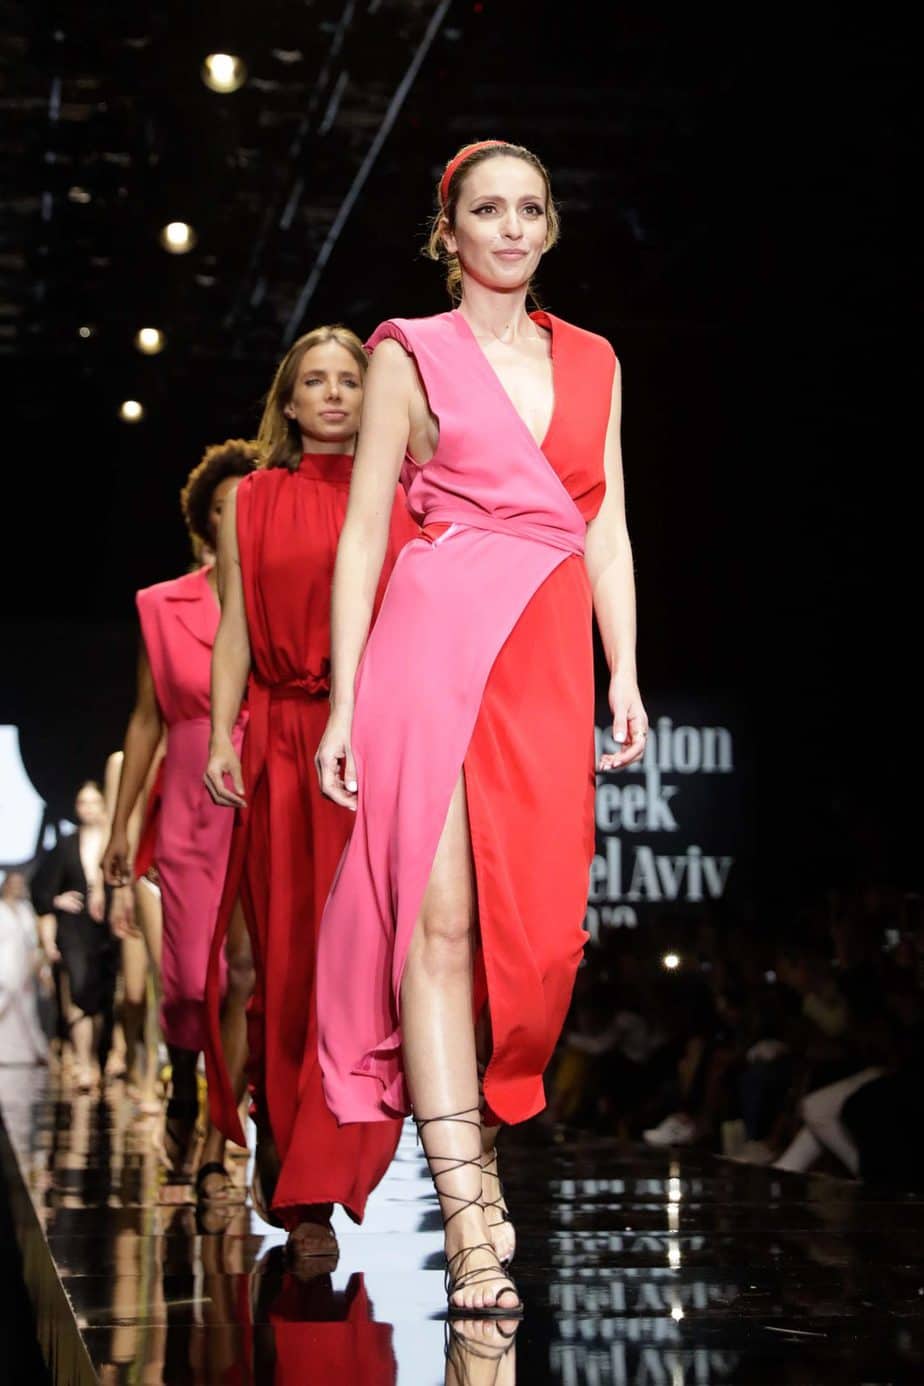 קולקציה עידן לרוס, תצוגת אופנה עידן לרוס שבוע האופנה תל אביב 2019, צילום עומר קפלן - 11